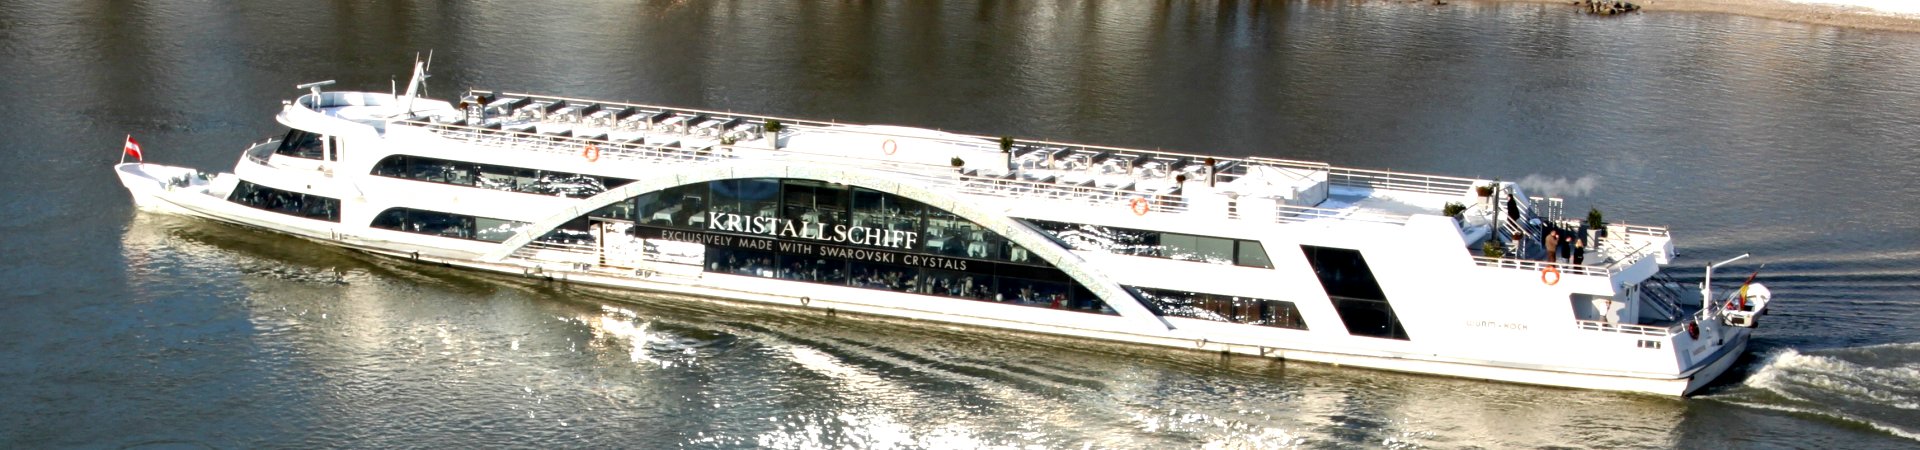 Erlebnisfahrt mit dem Kristallschiff ab Passau